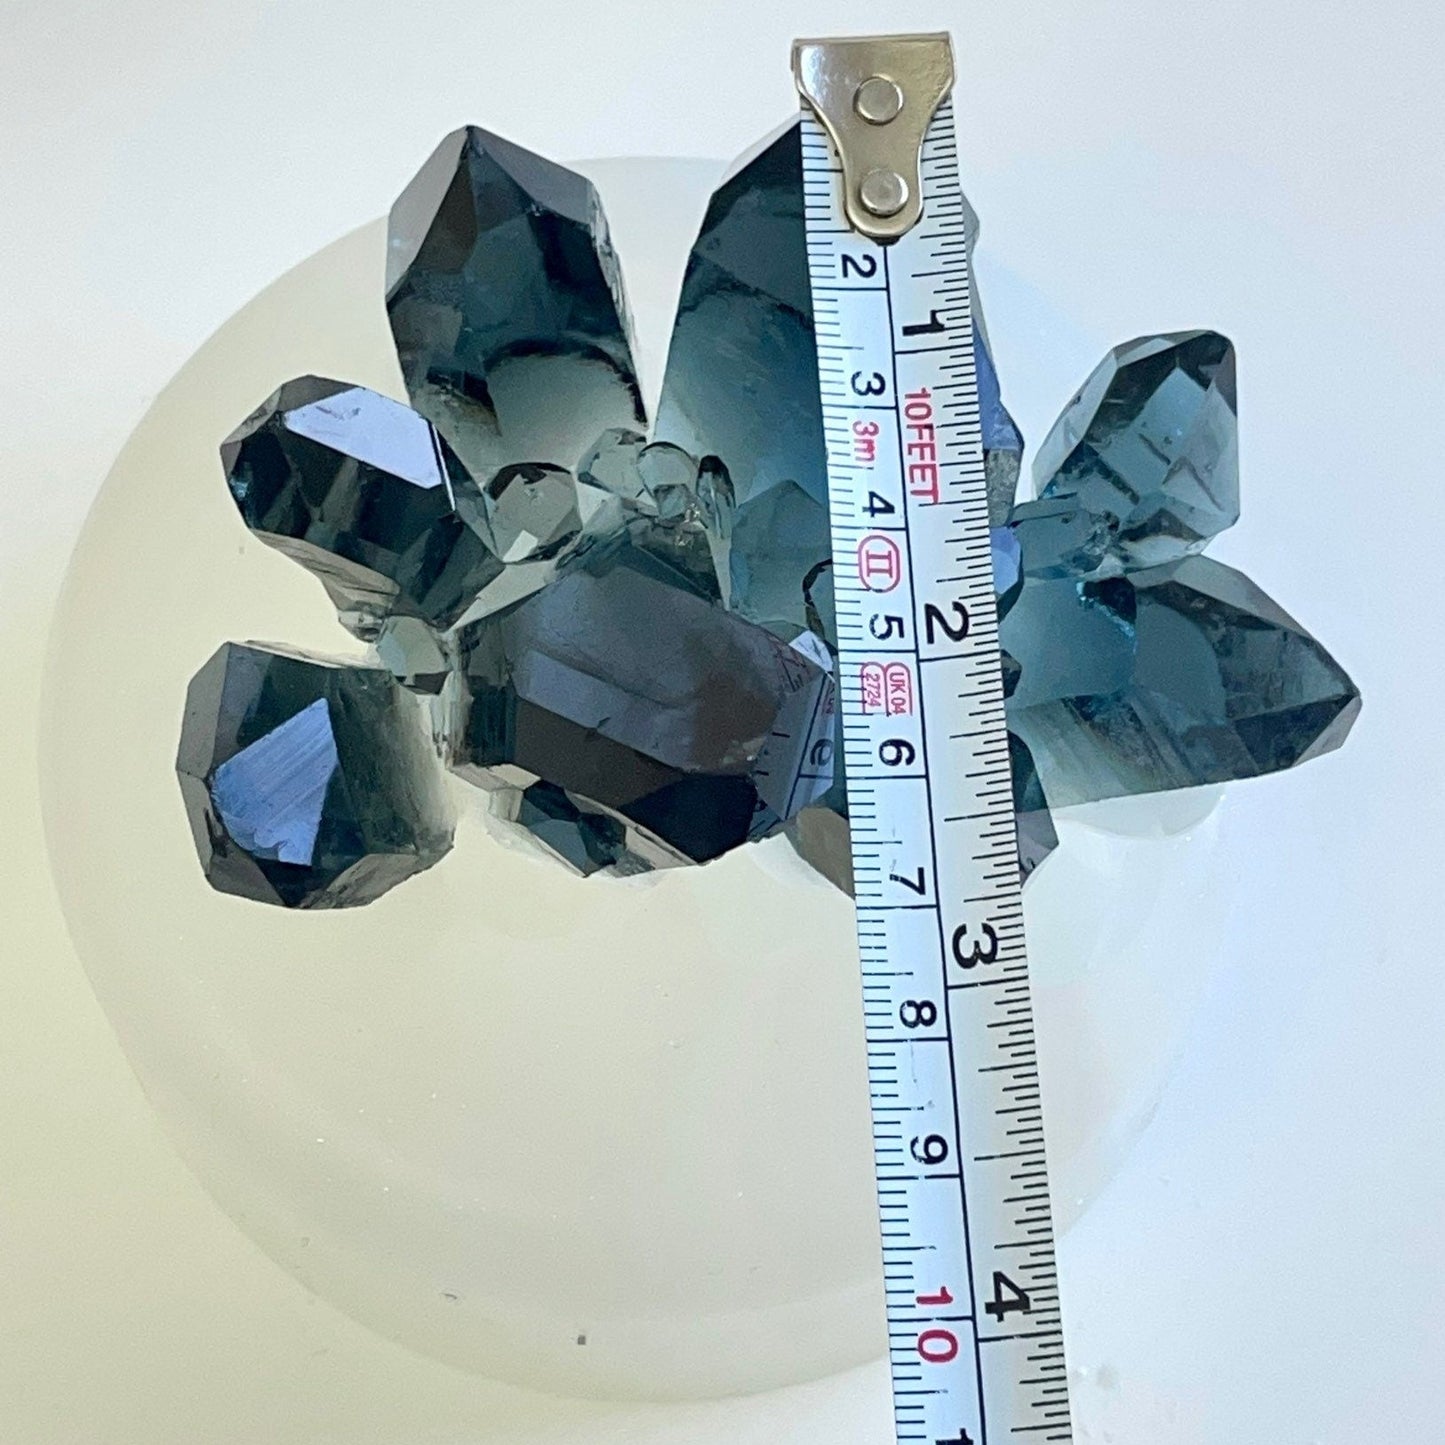 Luxuriöse Kristallcluster-Silikonform: Große Geode-Harzstein-Drusenform